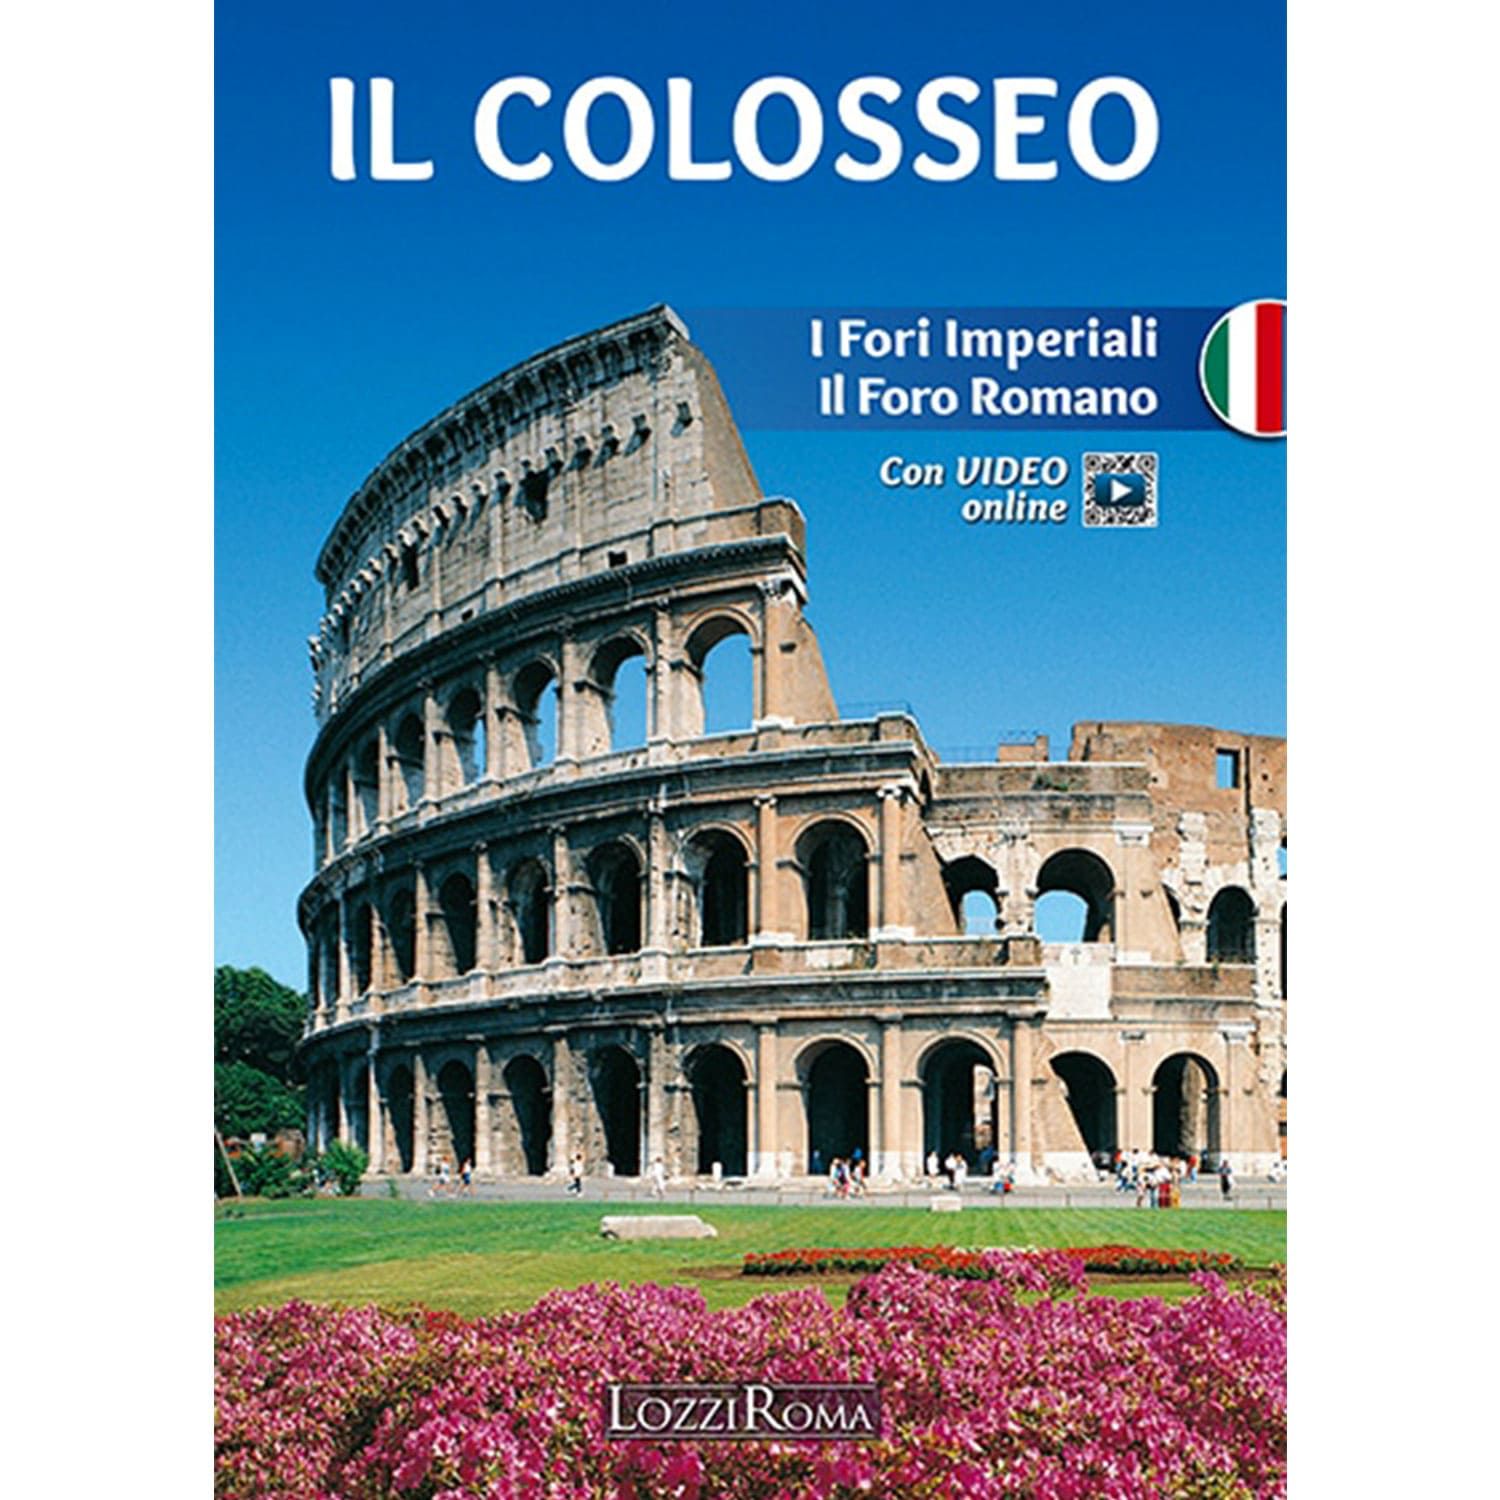 Il Colosseo e i Fori